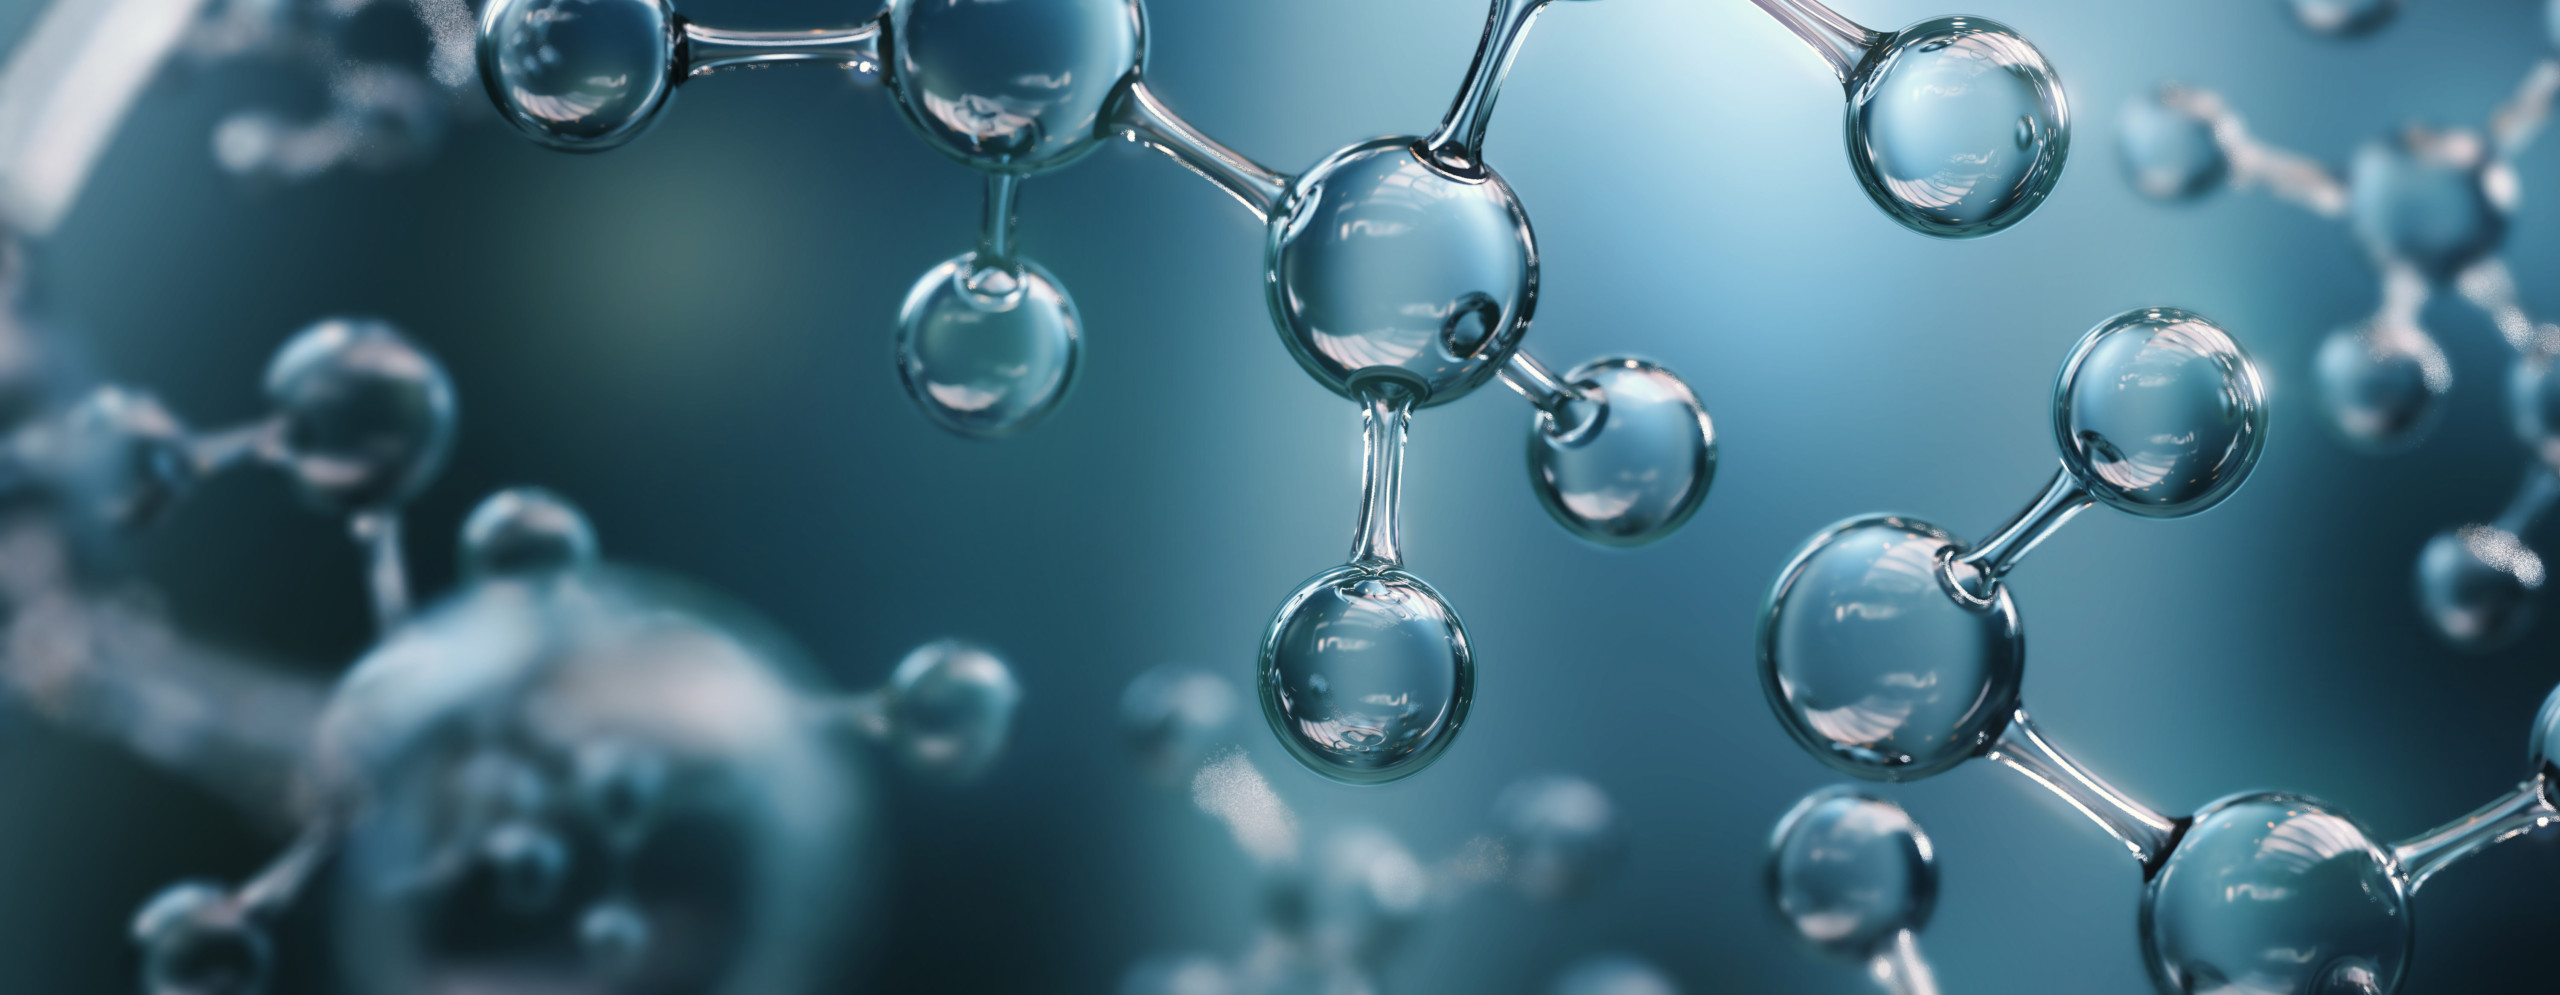 เคมีดักจับออกซิเจน ระบบบำบัดน้ำ ป้องกันการเติบโตของจุลินทรีย์ จุลชีพ